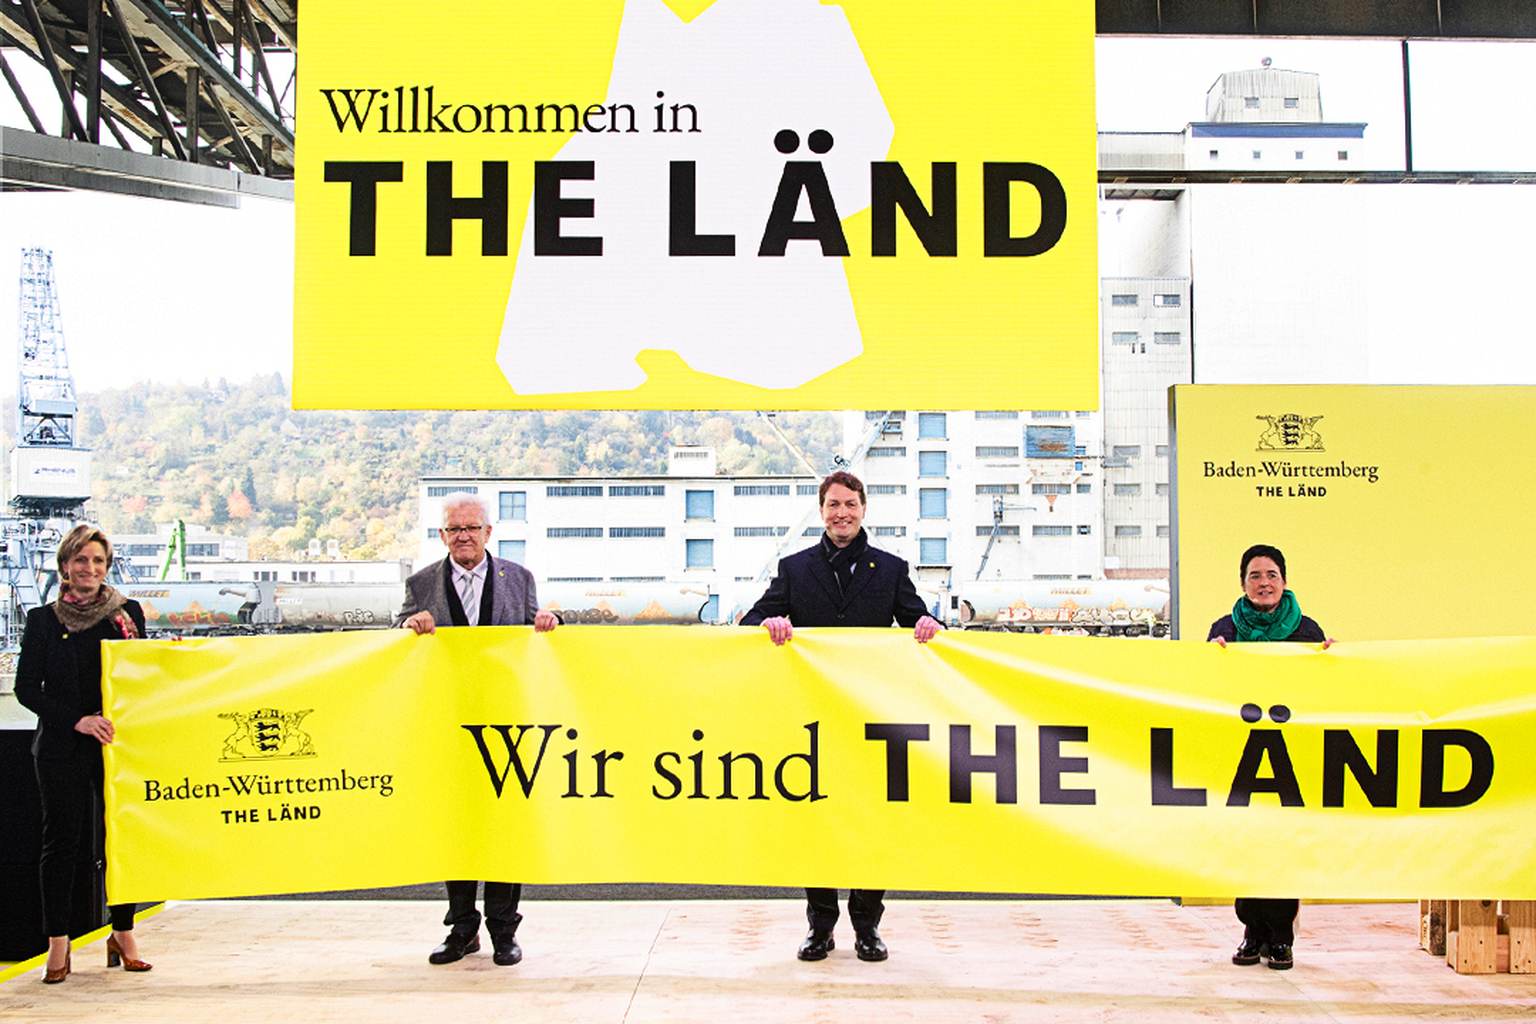 Ministerpräsident Winfried Kretschmann und andere Personen halten einen "Wir sind THE LÄND" Banner hoch.